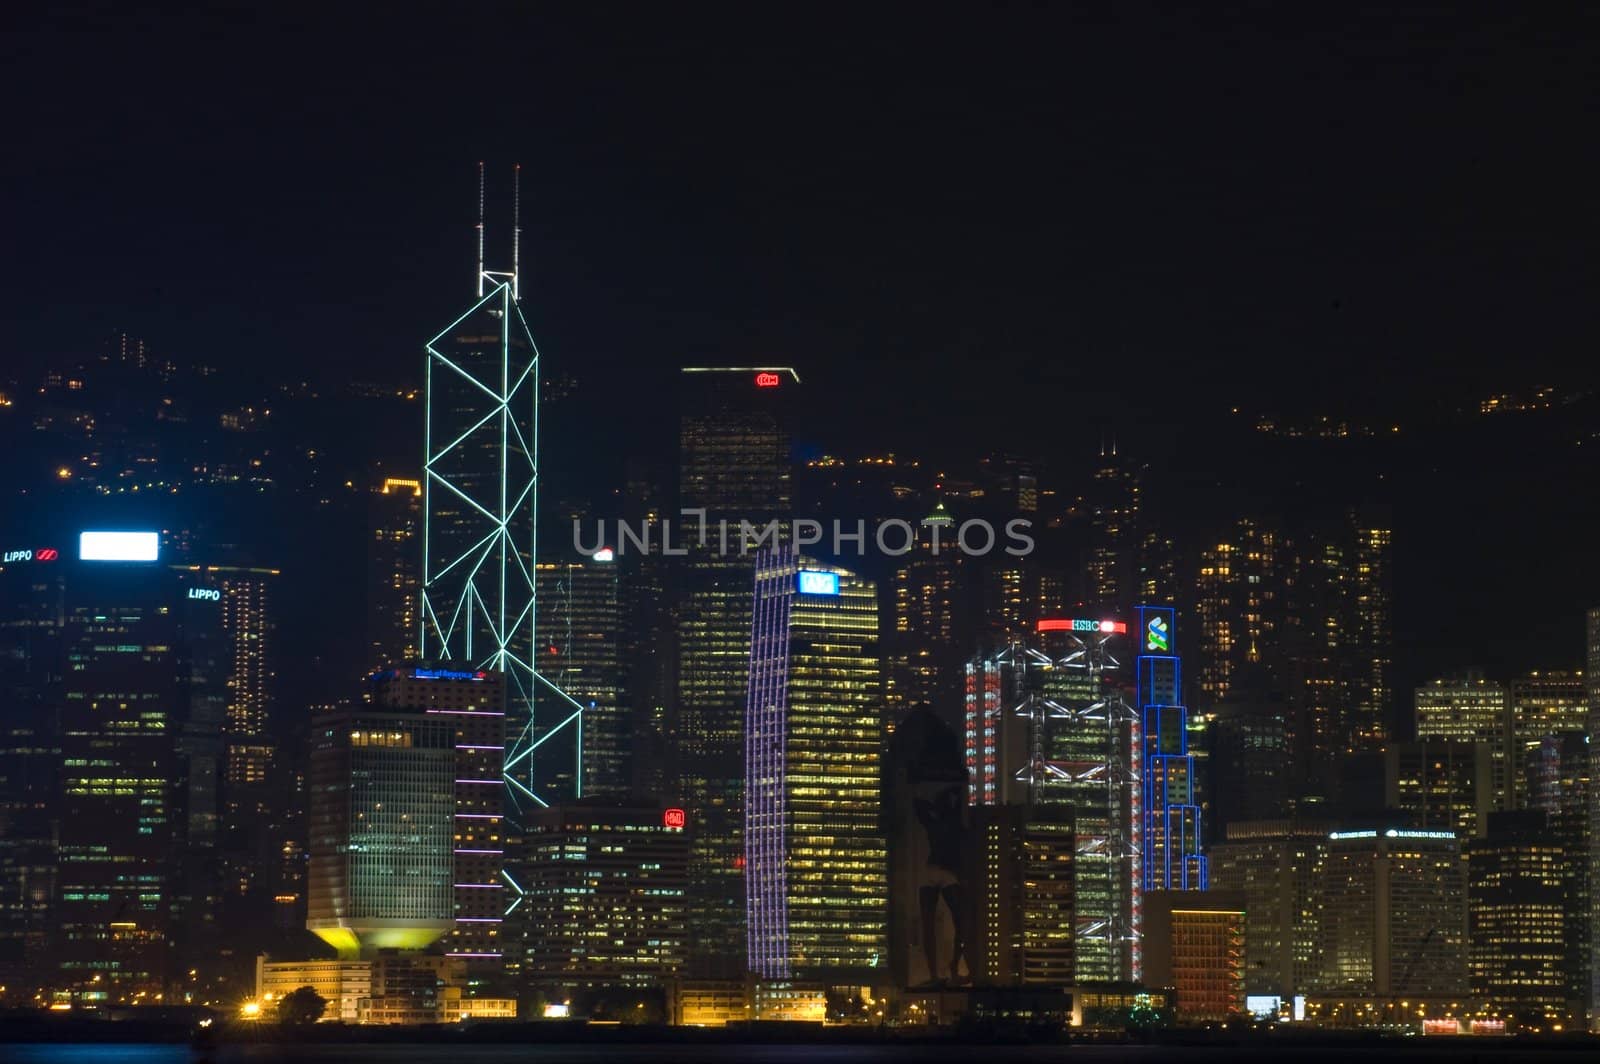 Hong Kong Harbor at Night by studioreddot